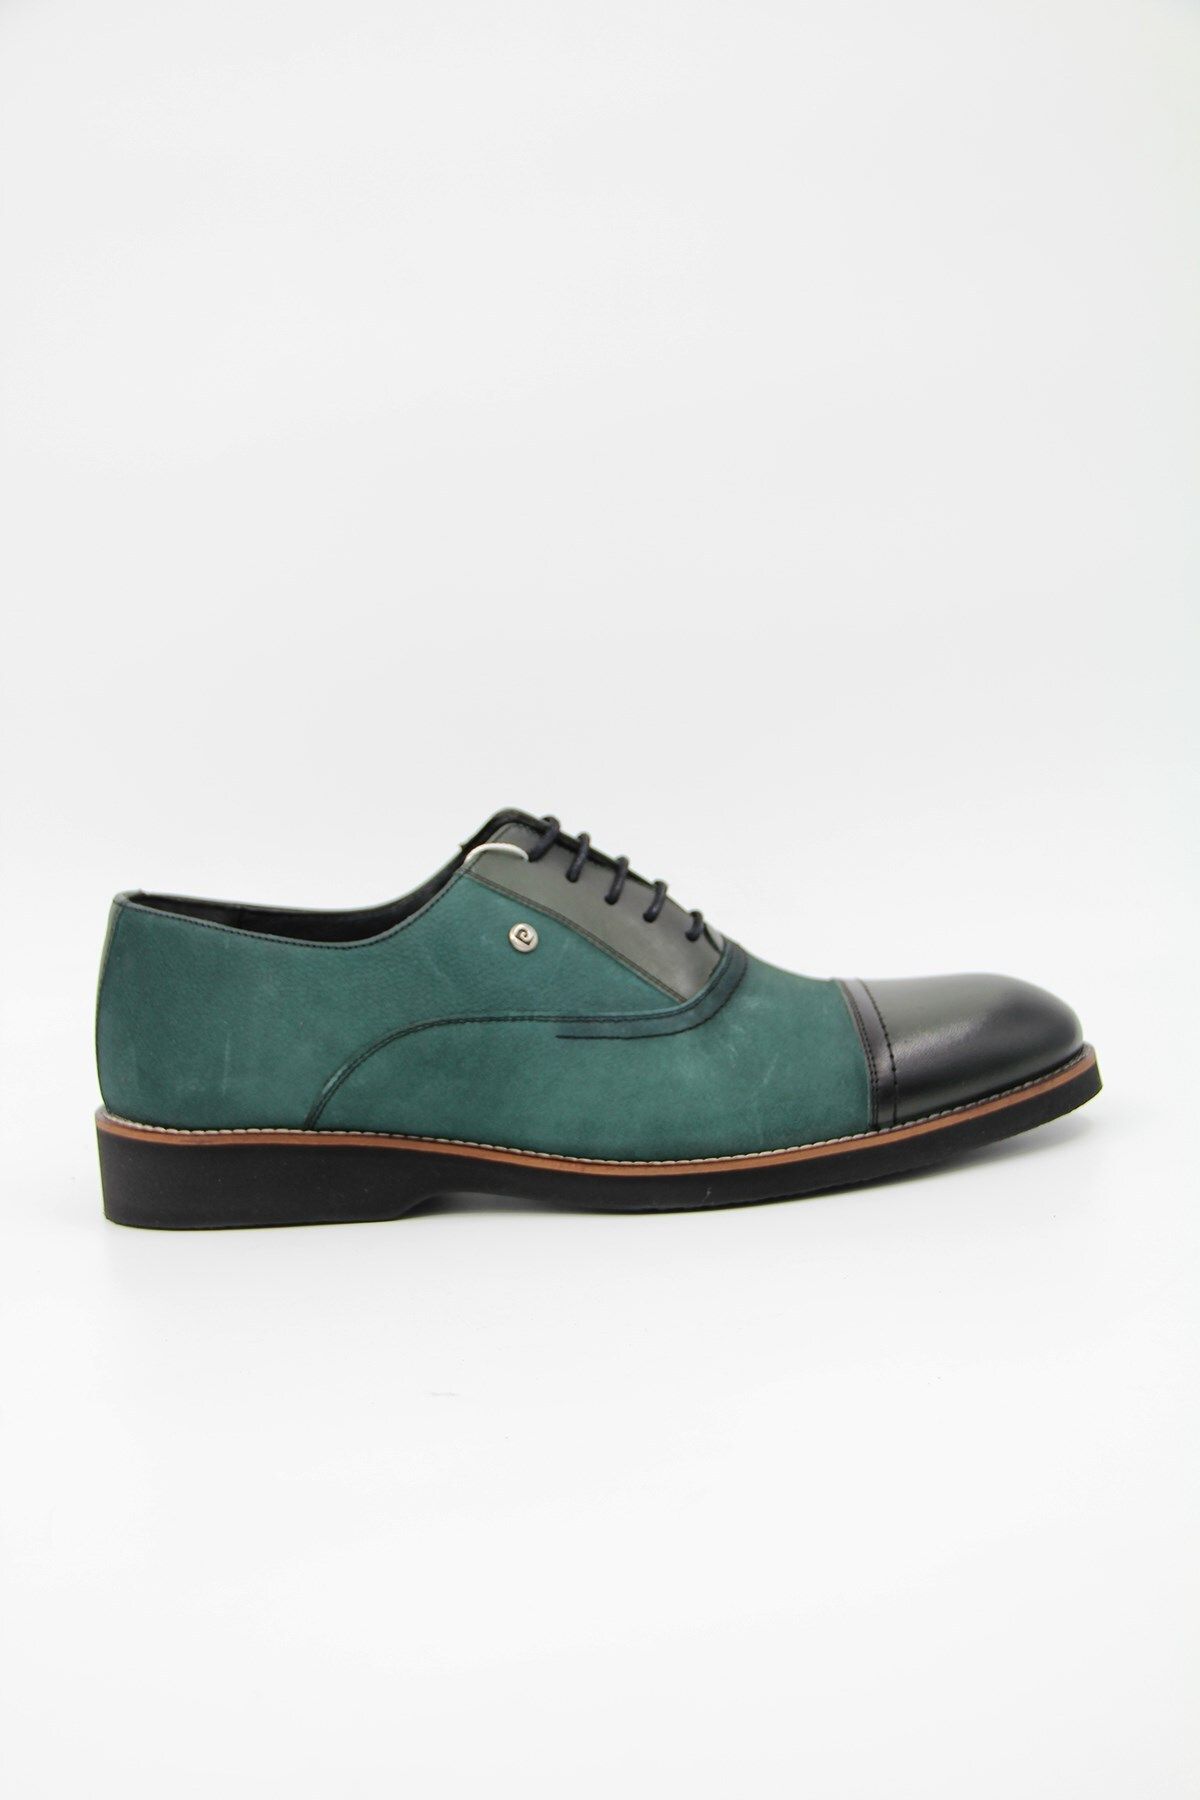 Pierre Cardin 120278 Erkek Klasik Ayakkabı - Yeşil